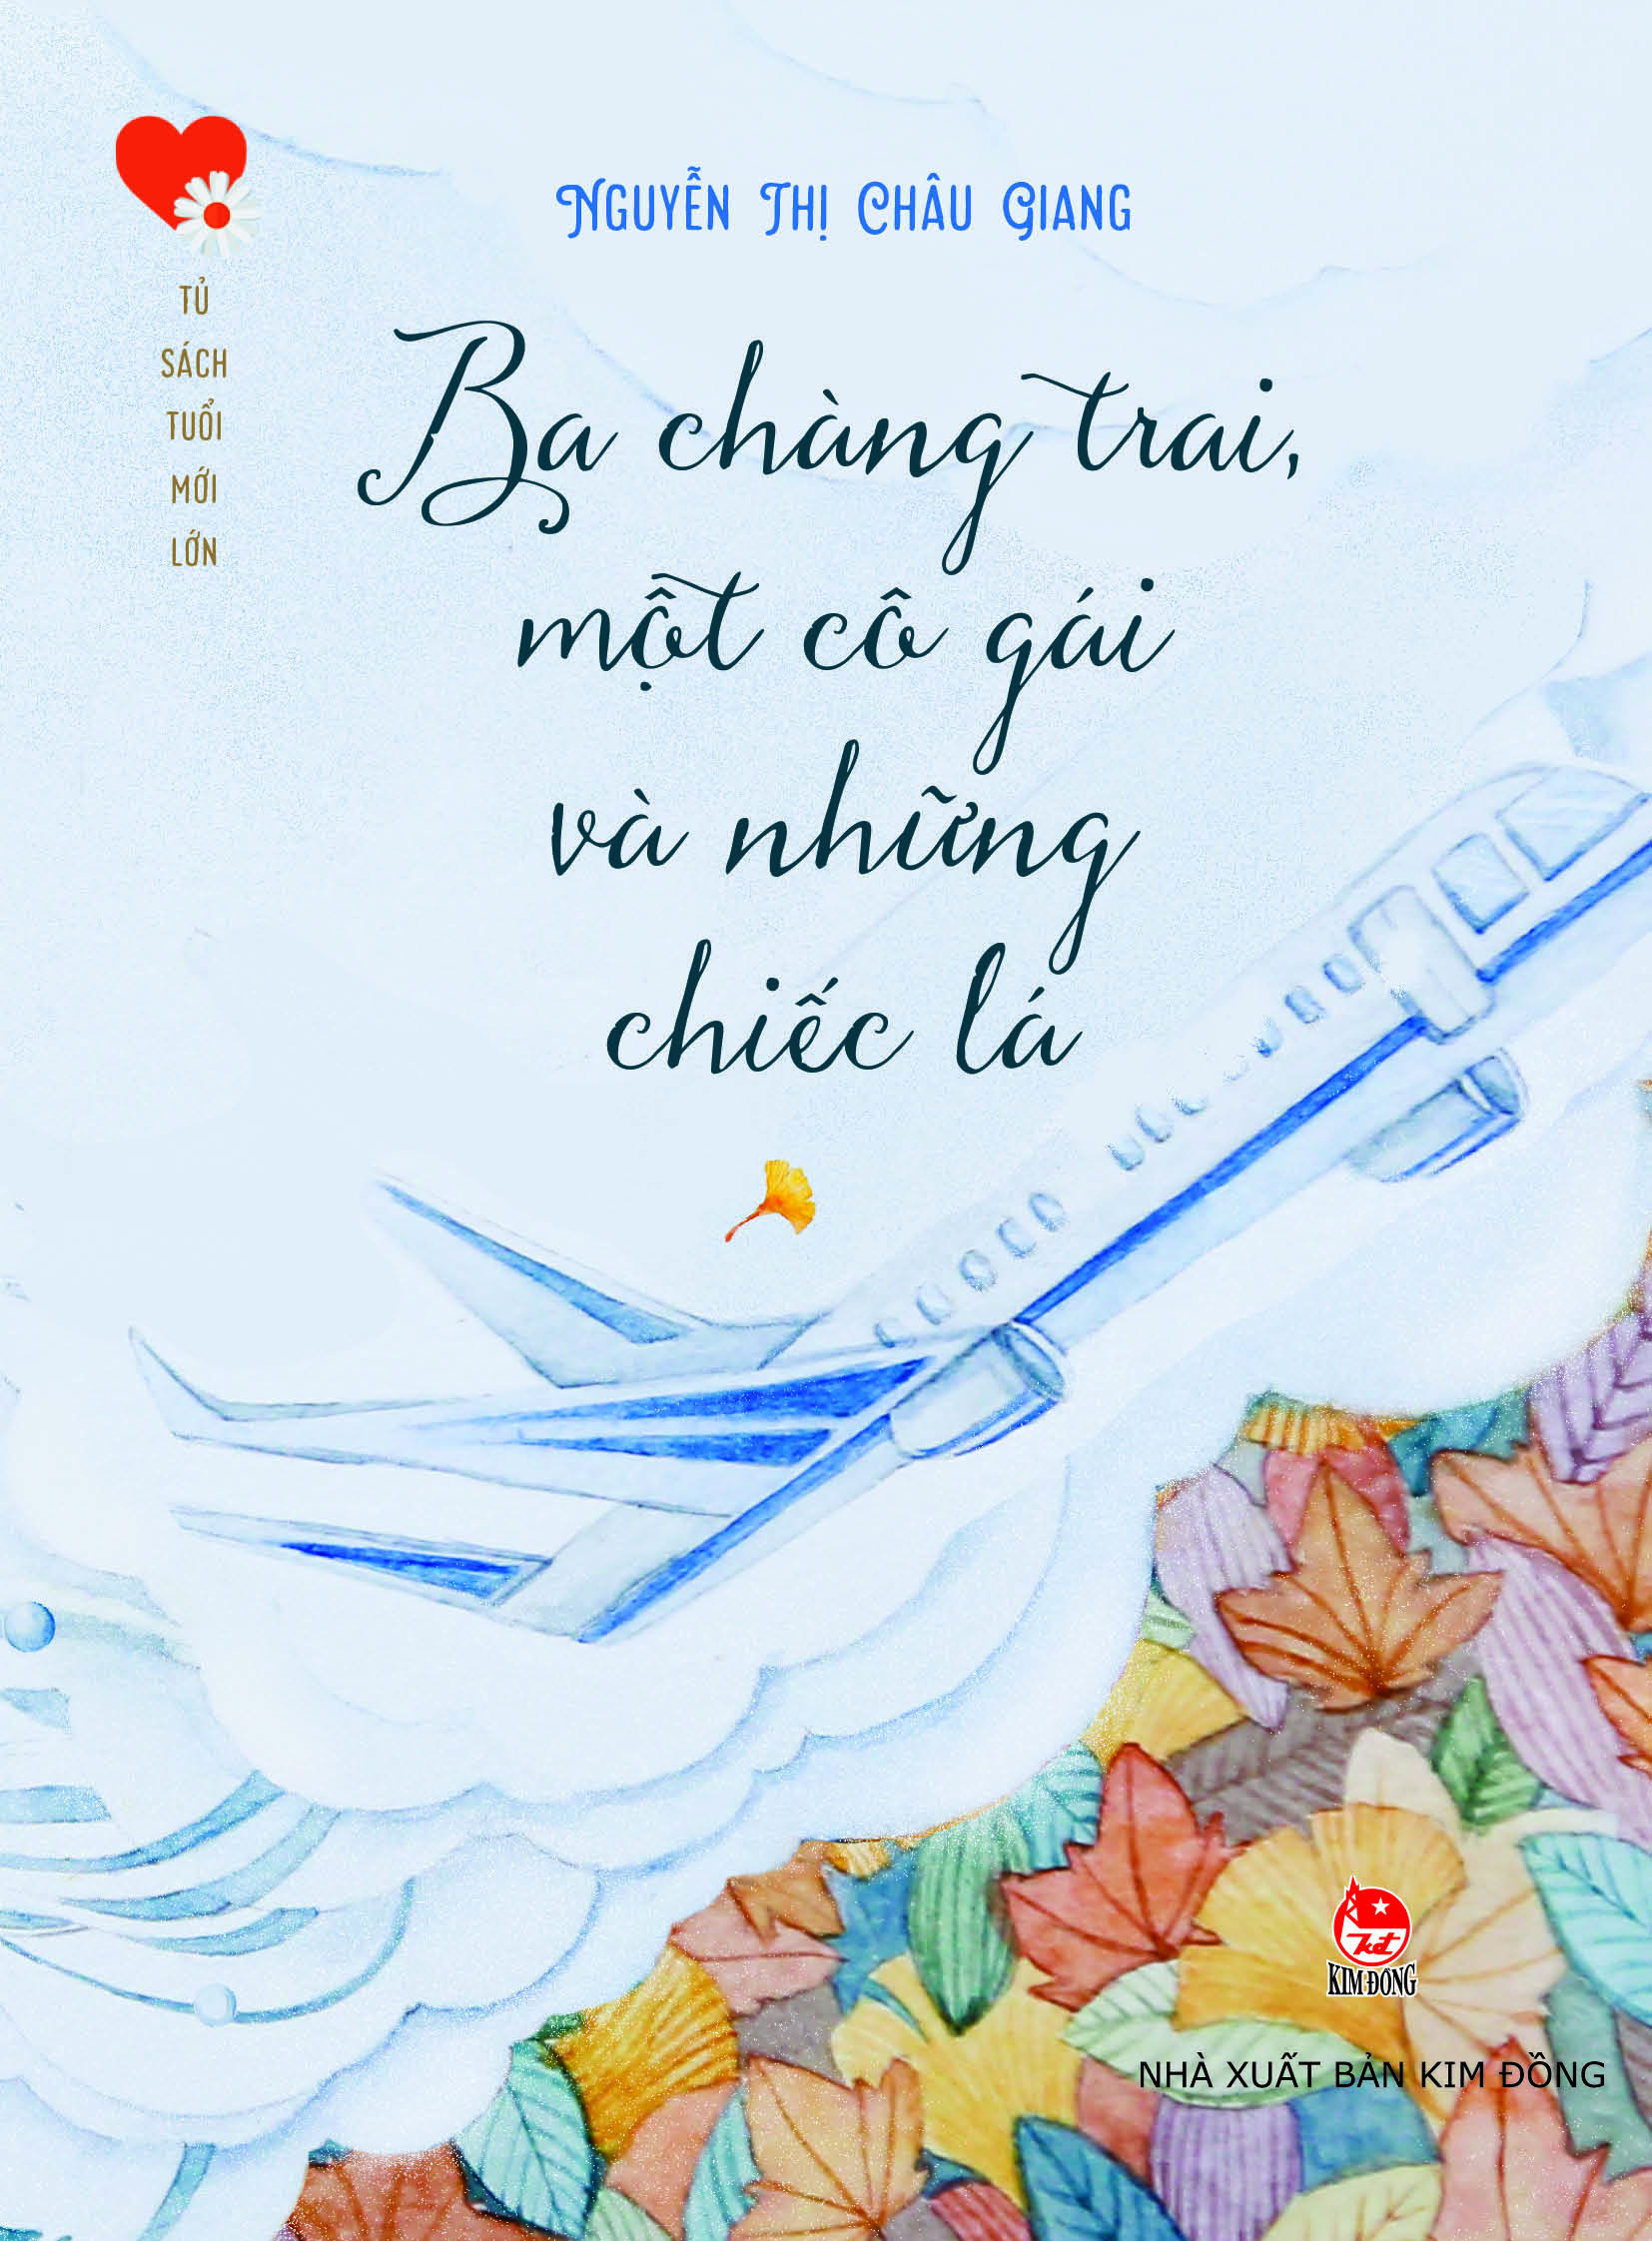 Nhà văn Nguyễn Thị Châu Giang từng là một tên tuổi được yêu thích, hiện nay chị hoạt động trong lĩnh vực giáo dục